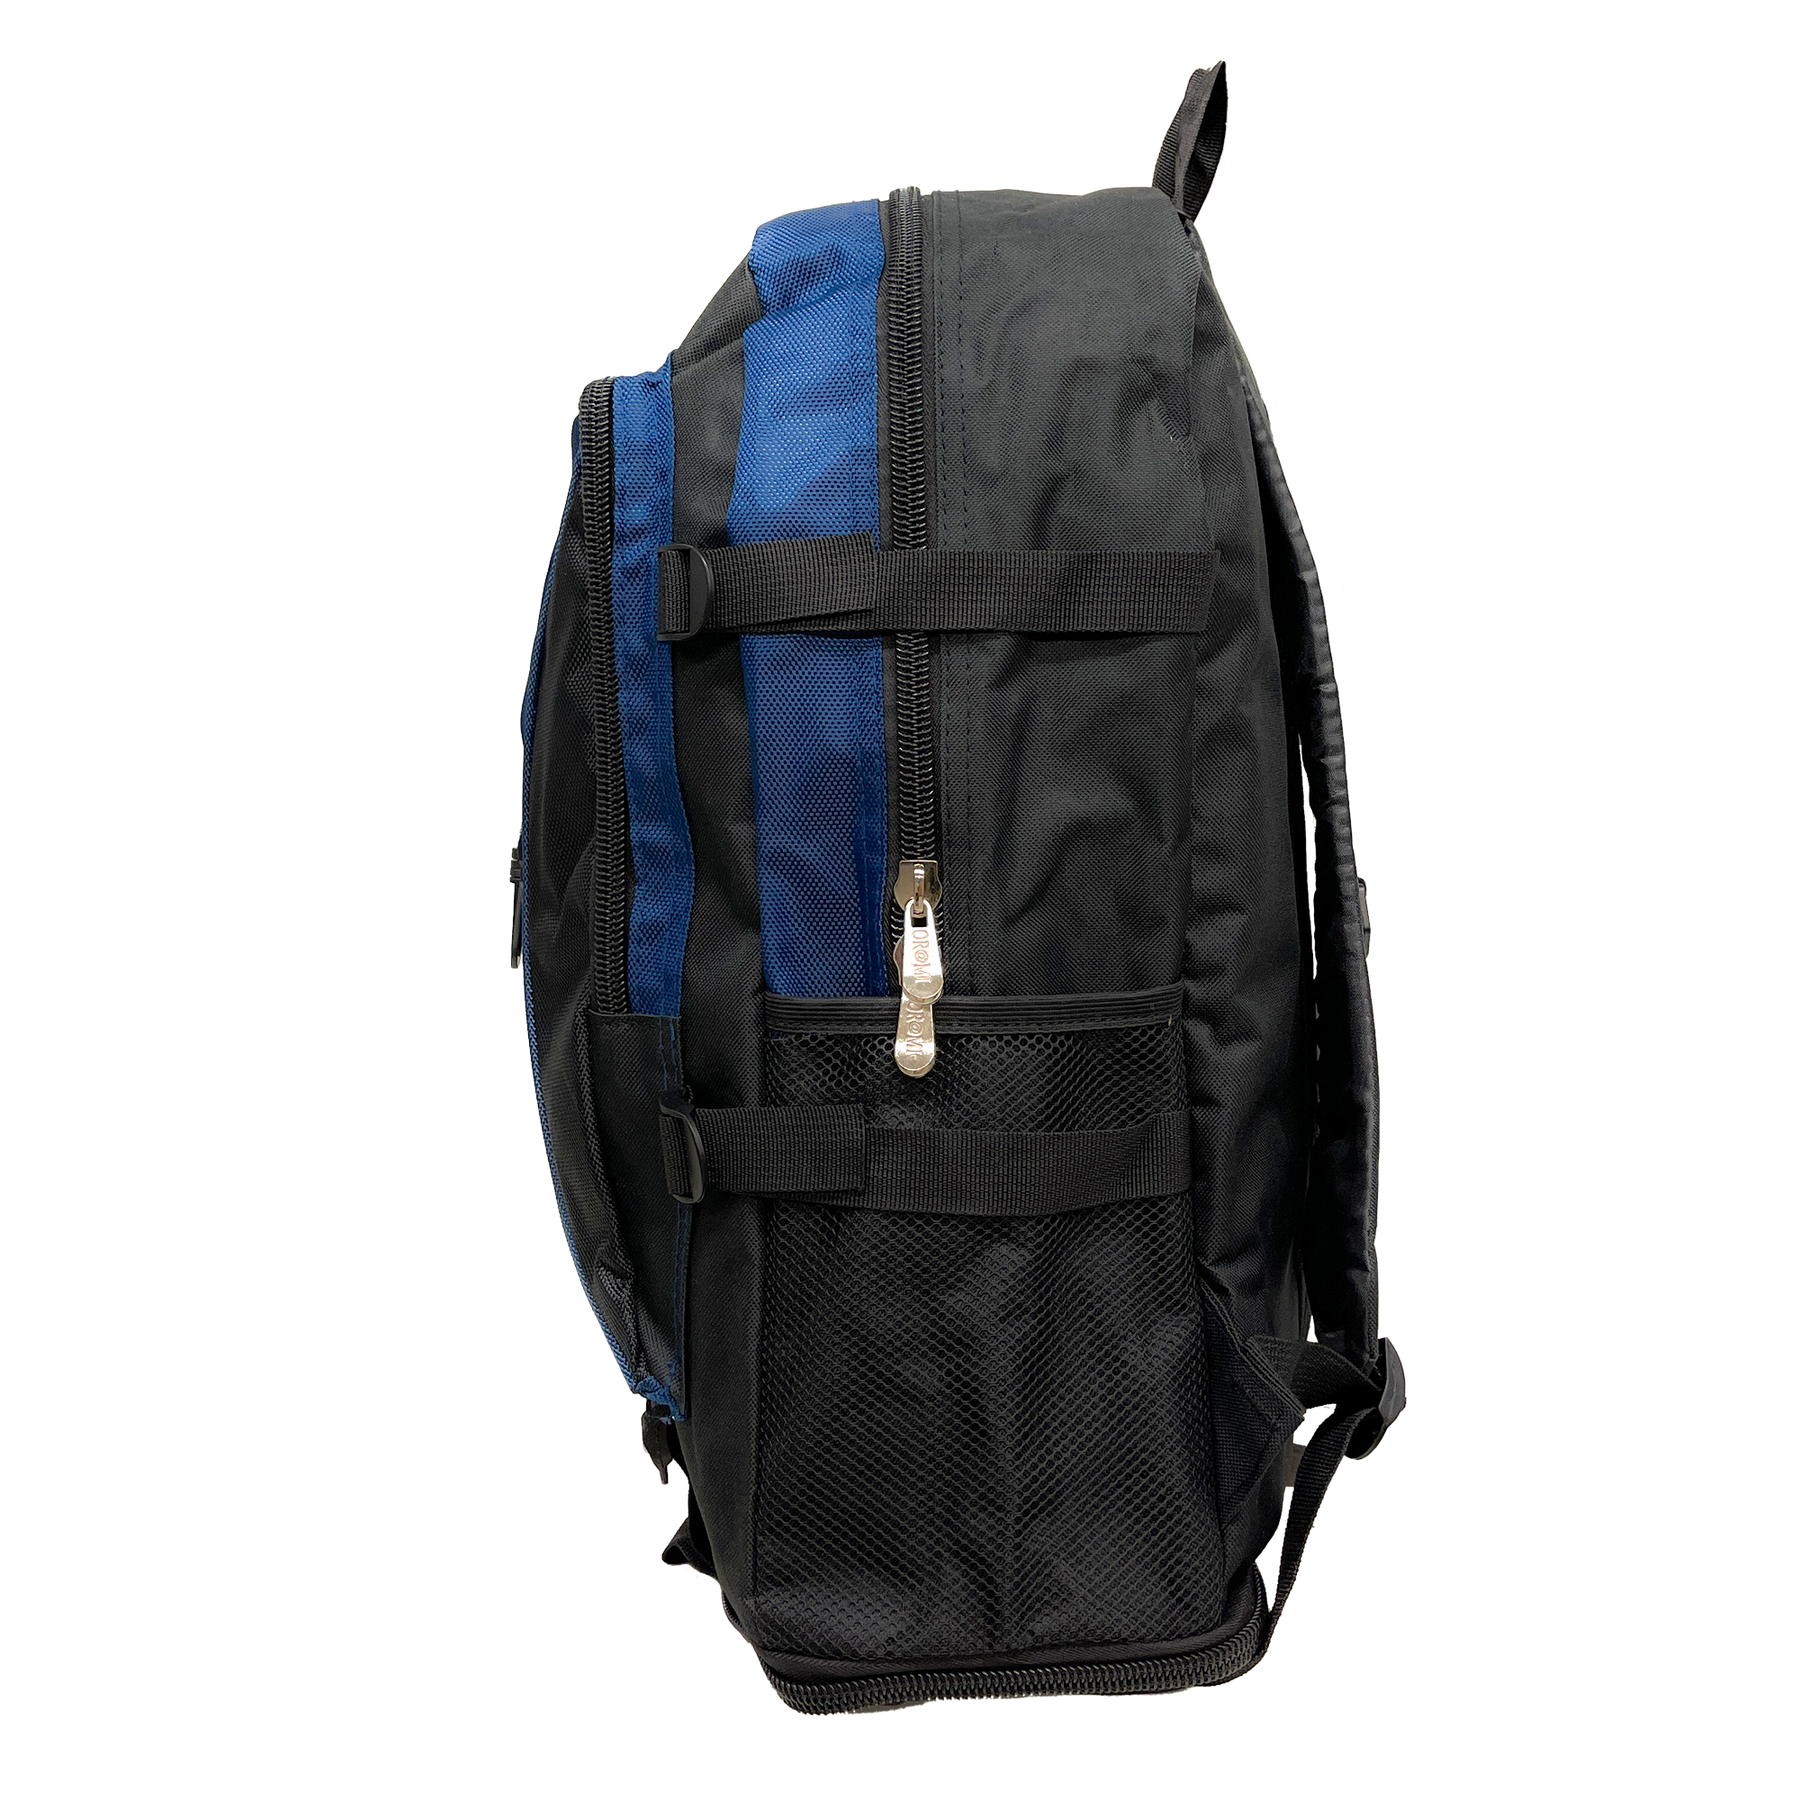 Plecak Or@mi Adventure 360: Wszechstronność i wygoda podczas każdej wycieczki - 60 x 36 cm